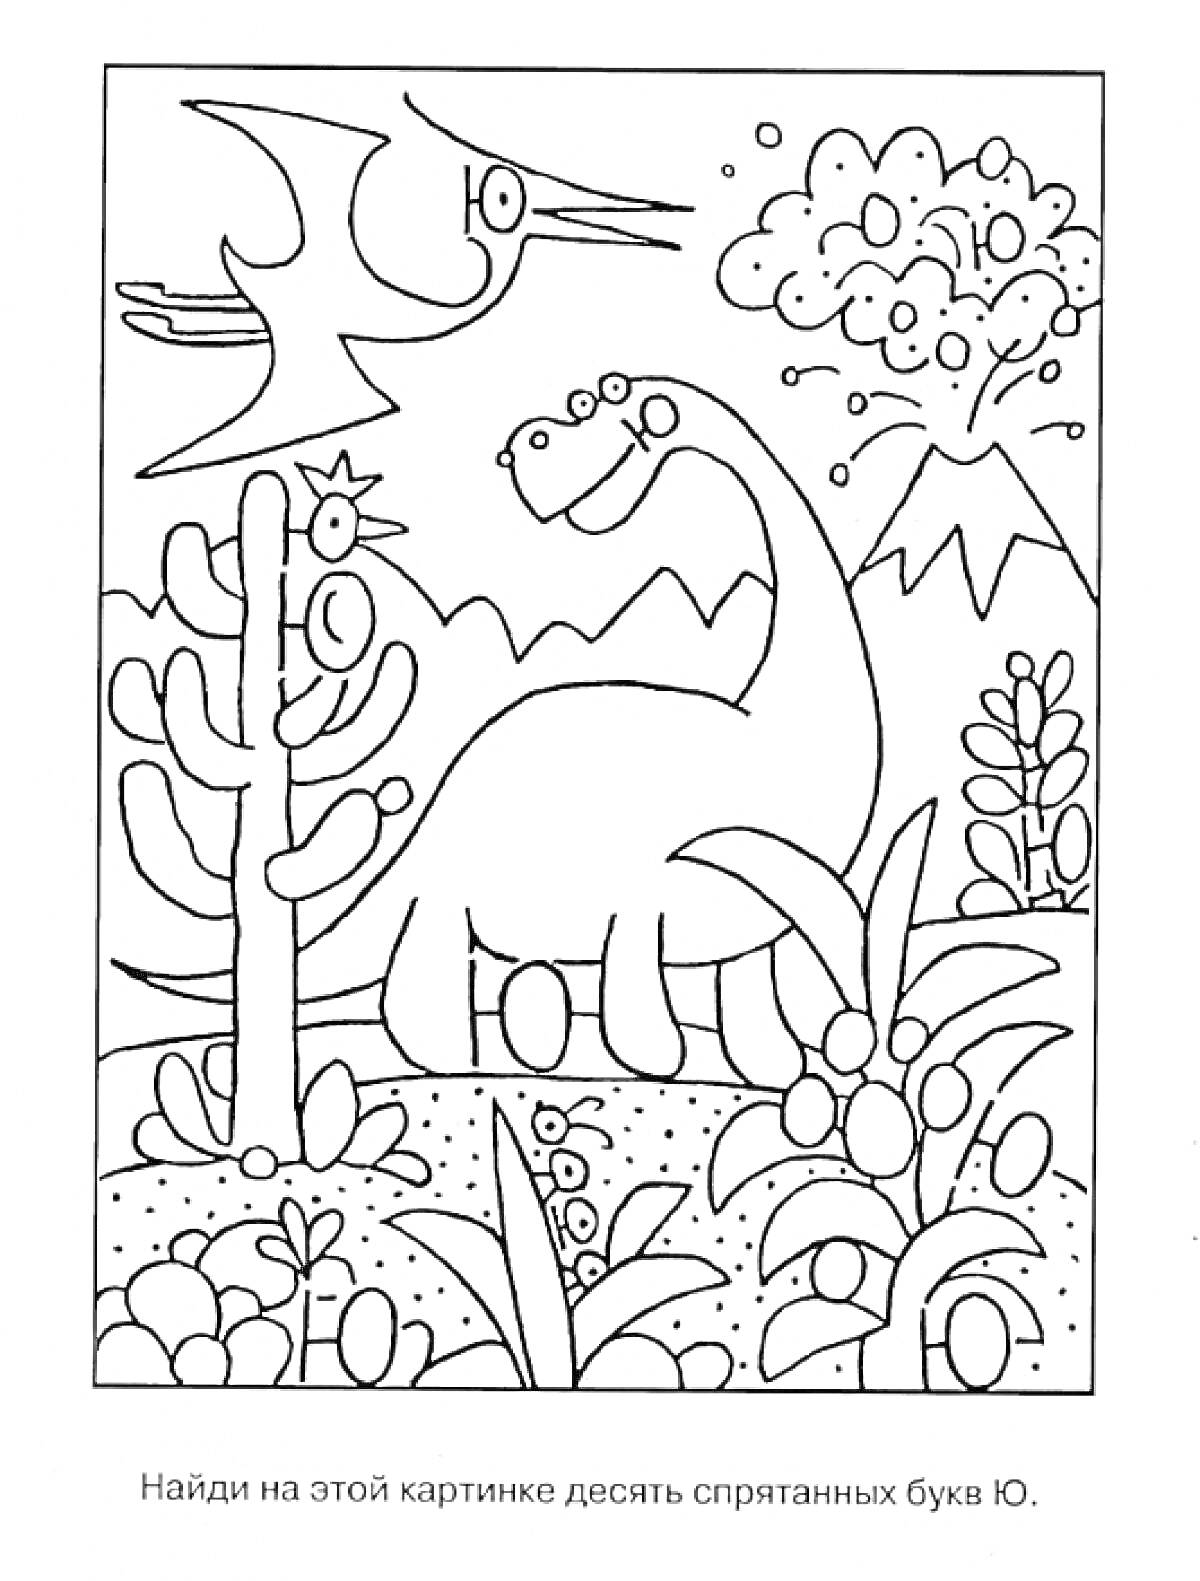 Динозавр и птерозавр, деревья, горы, кусты, буквы Ю